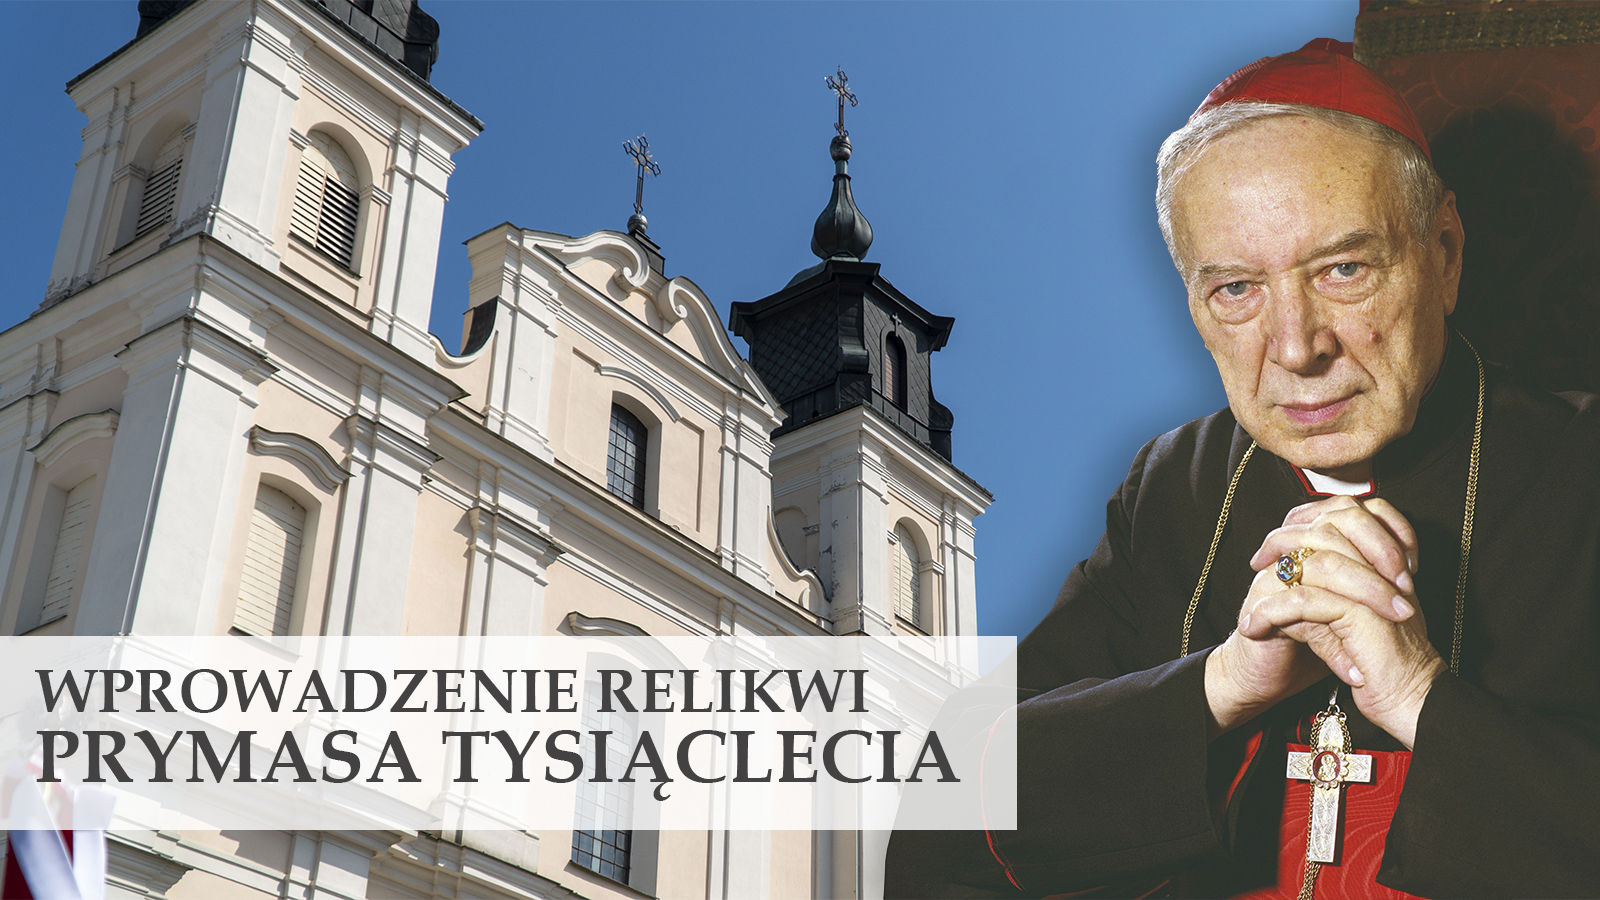 Relikwie Prymasa Tysiąclecia w łukowskiej kolegiacie